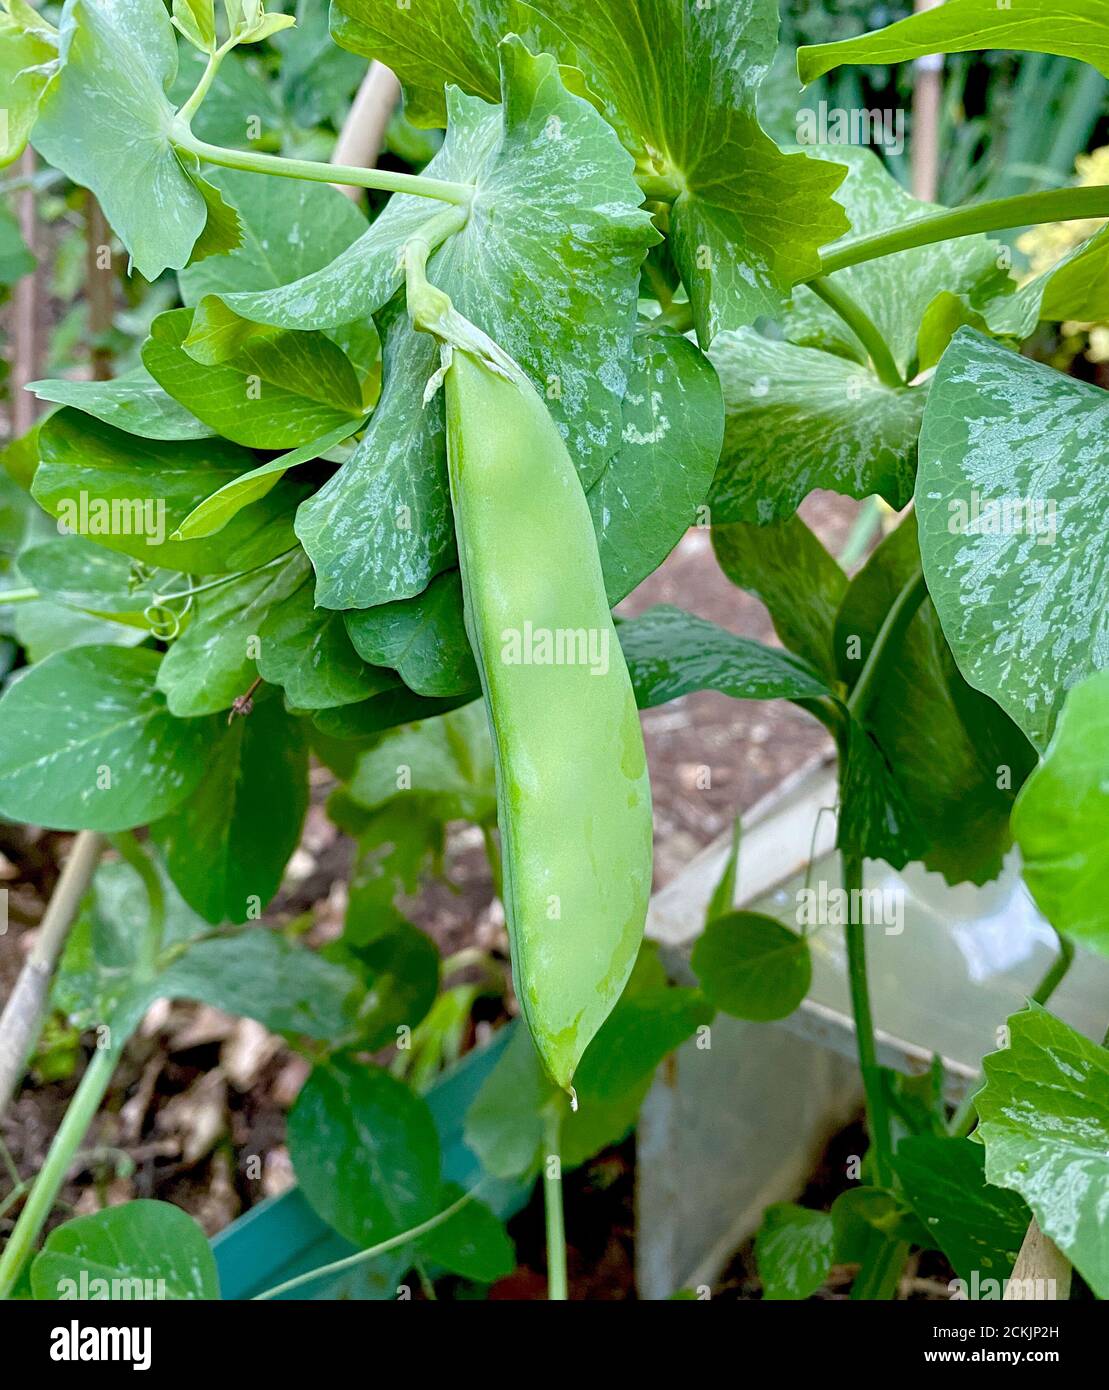 Mangetout, petits pois dans un gousse cultivé et jardin anglais en été. Le légume vert est grandi dans un cadre de bâtons attachés ensemble. Banque D'Images